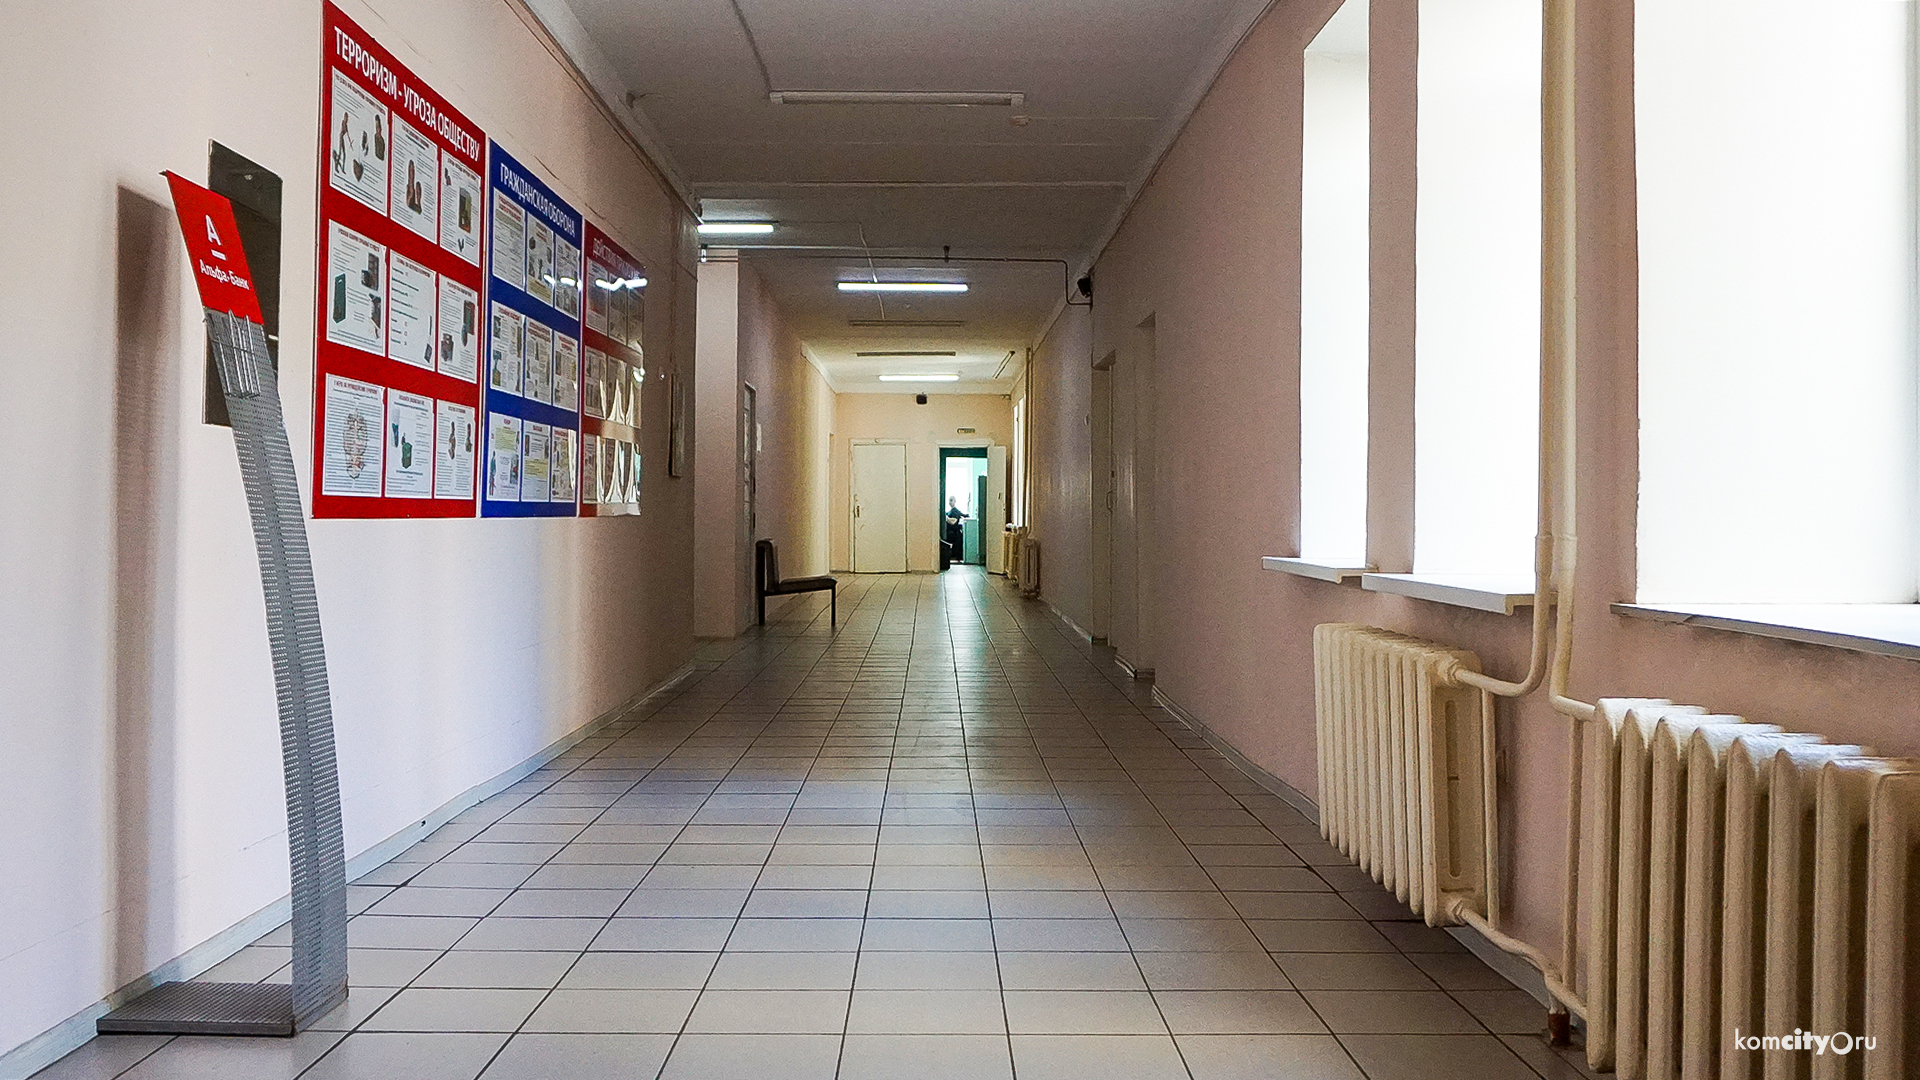 За сутки в инфекционный госпиталь Комсомольска поступили 25 пациентов с коронавирусом